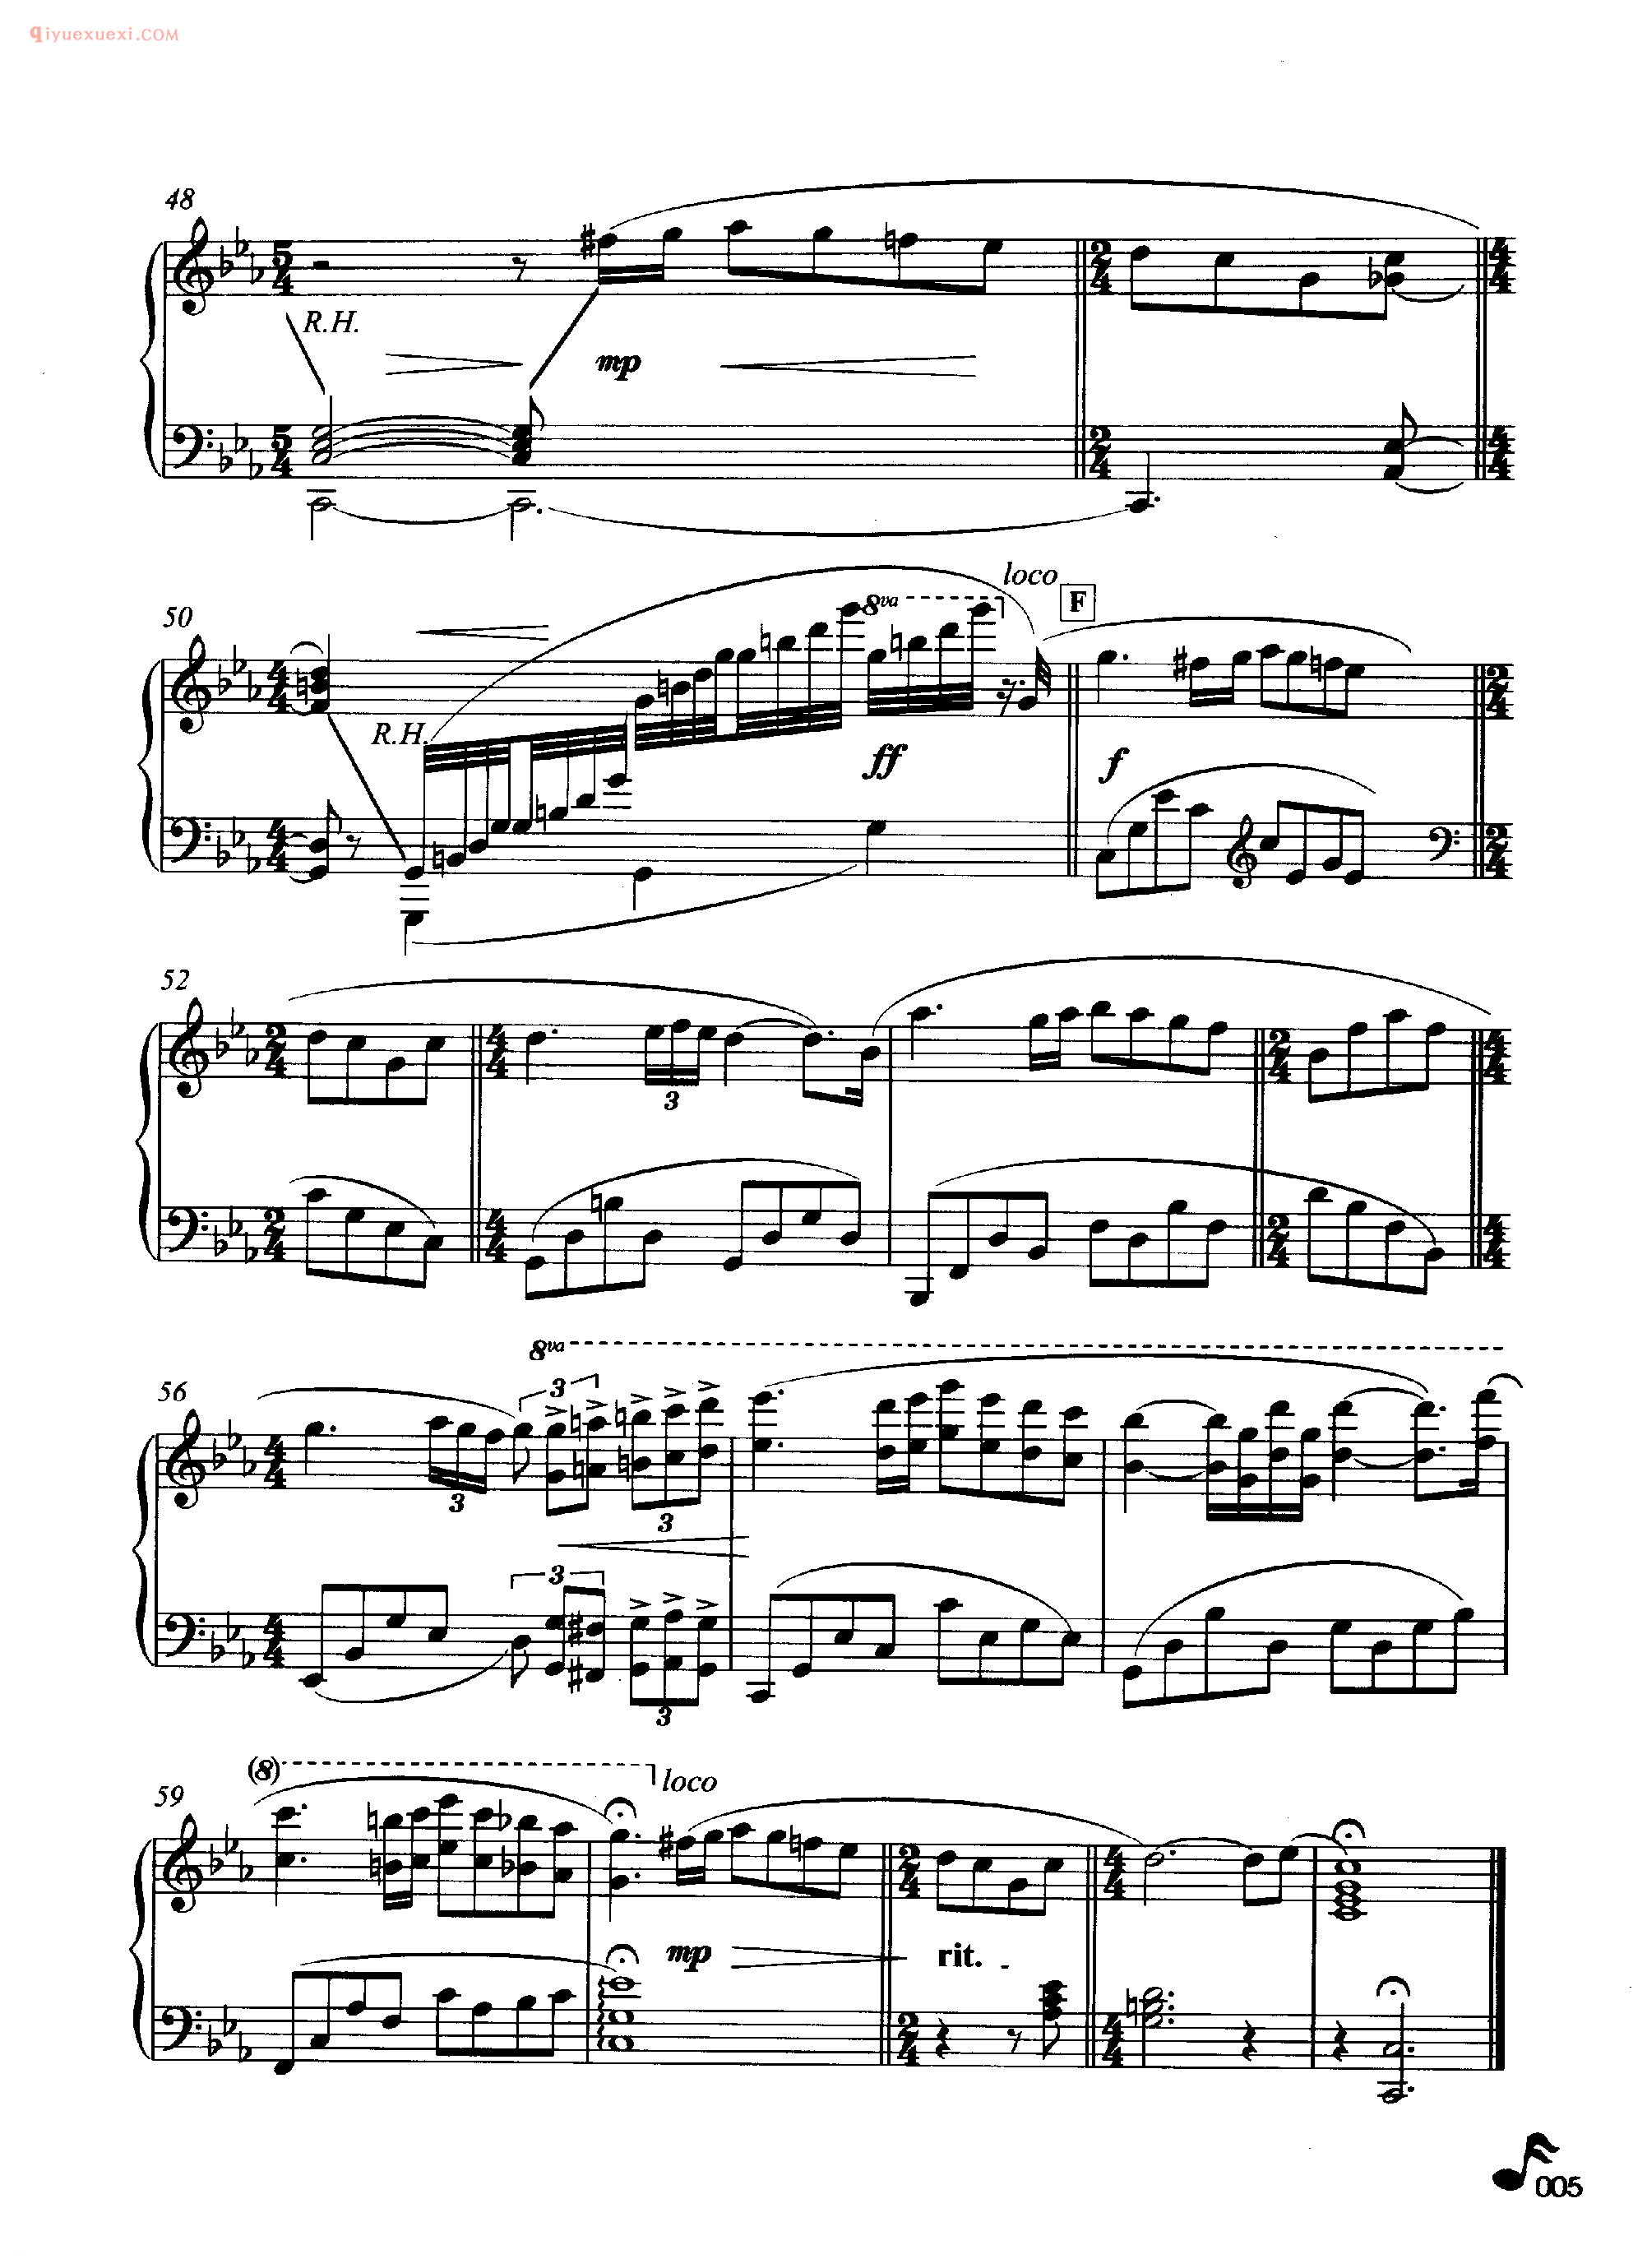 理查德·克莱德曼钢琴名曲《爱的协奏曲》钢琴乐谱